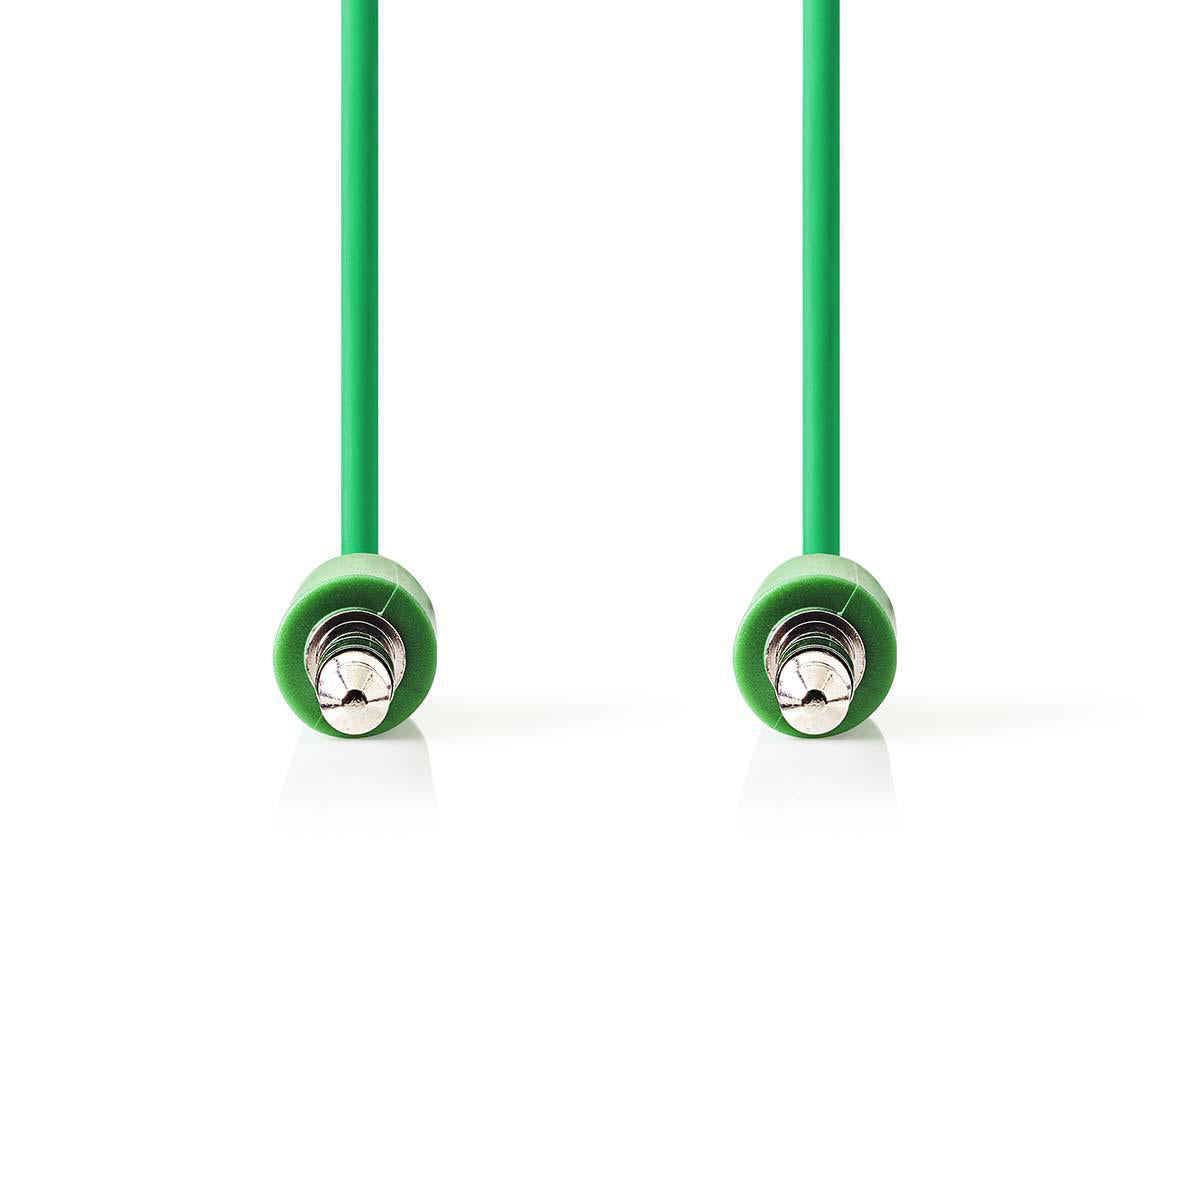 Audio Kabel, Klinken Stecker 3.5mm auf Stecker 3.5mm, 1 Meter, Grün, Robust, Vergoldet, MediaKabel